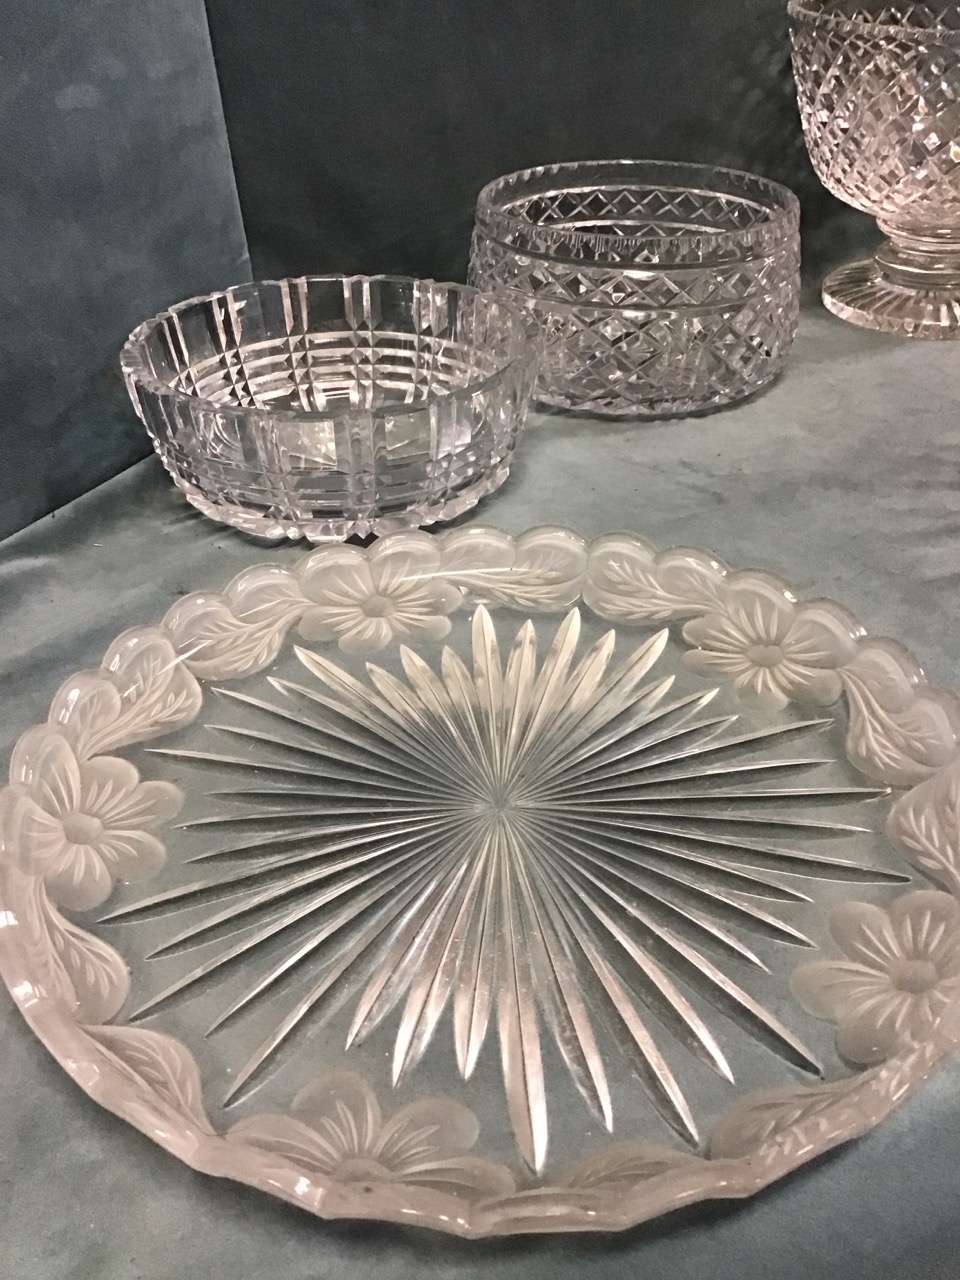 Miscellaneous cut glass bowls - two Stuart shallow footed, a Stuart pedestal punch bowl, a Harbridge - Image 3 of 3